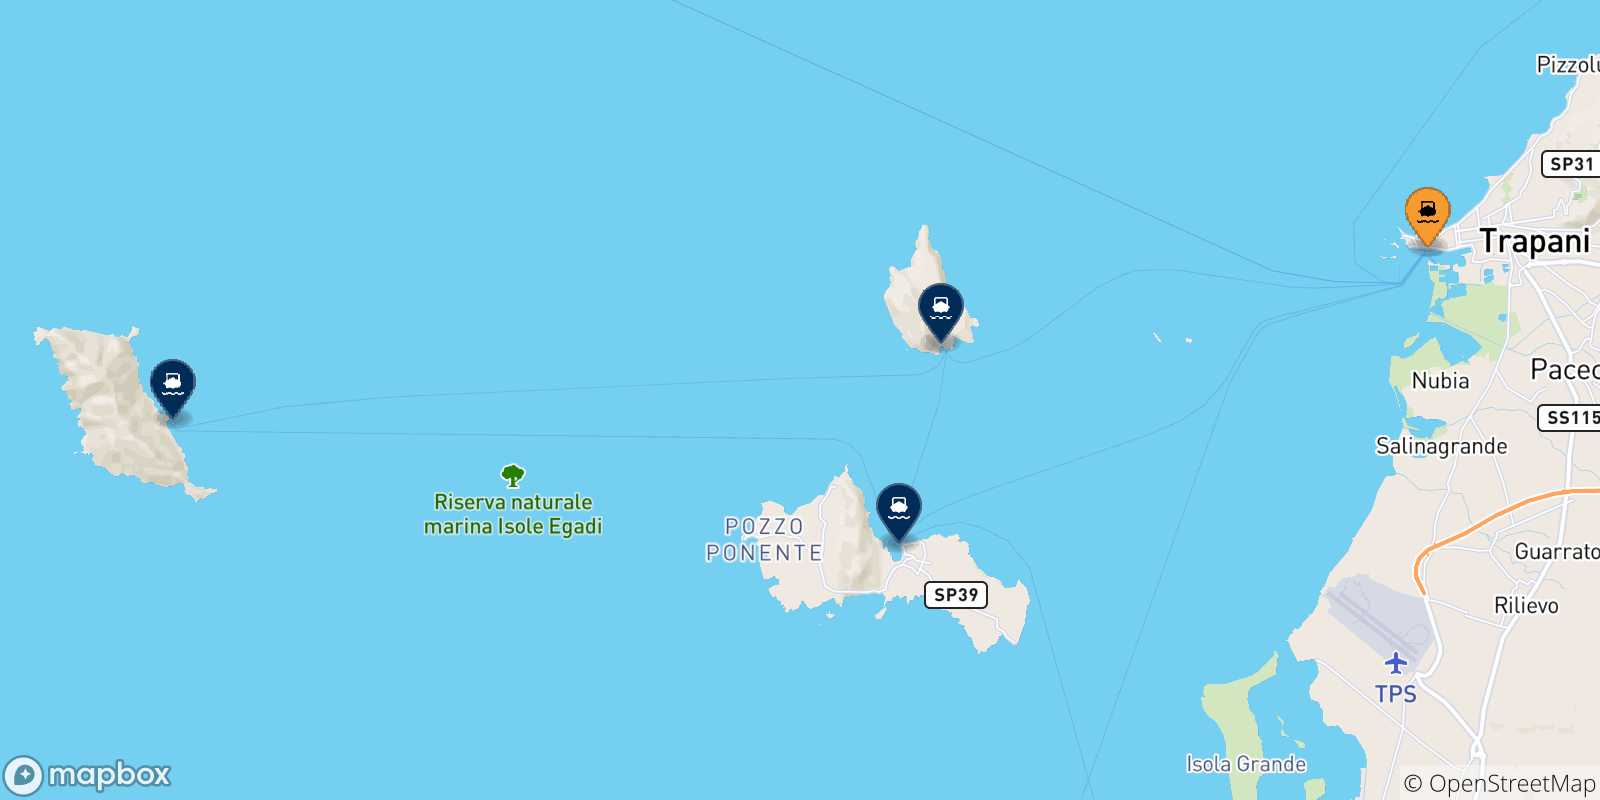 Mappa delle possibili rotte tra Trapani e le Isole Egadi